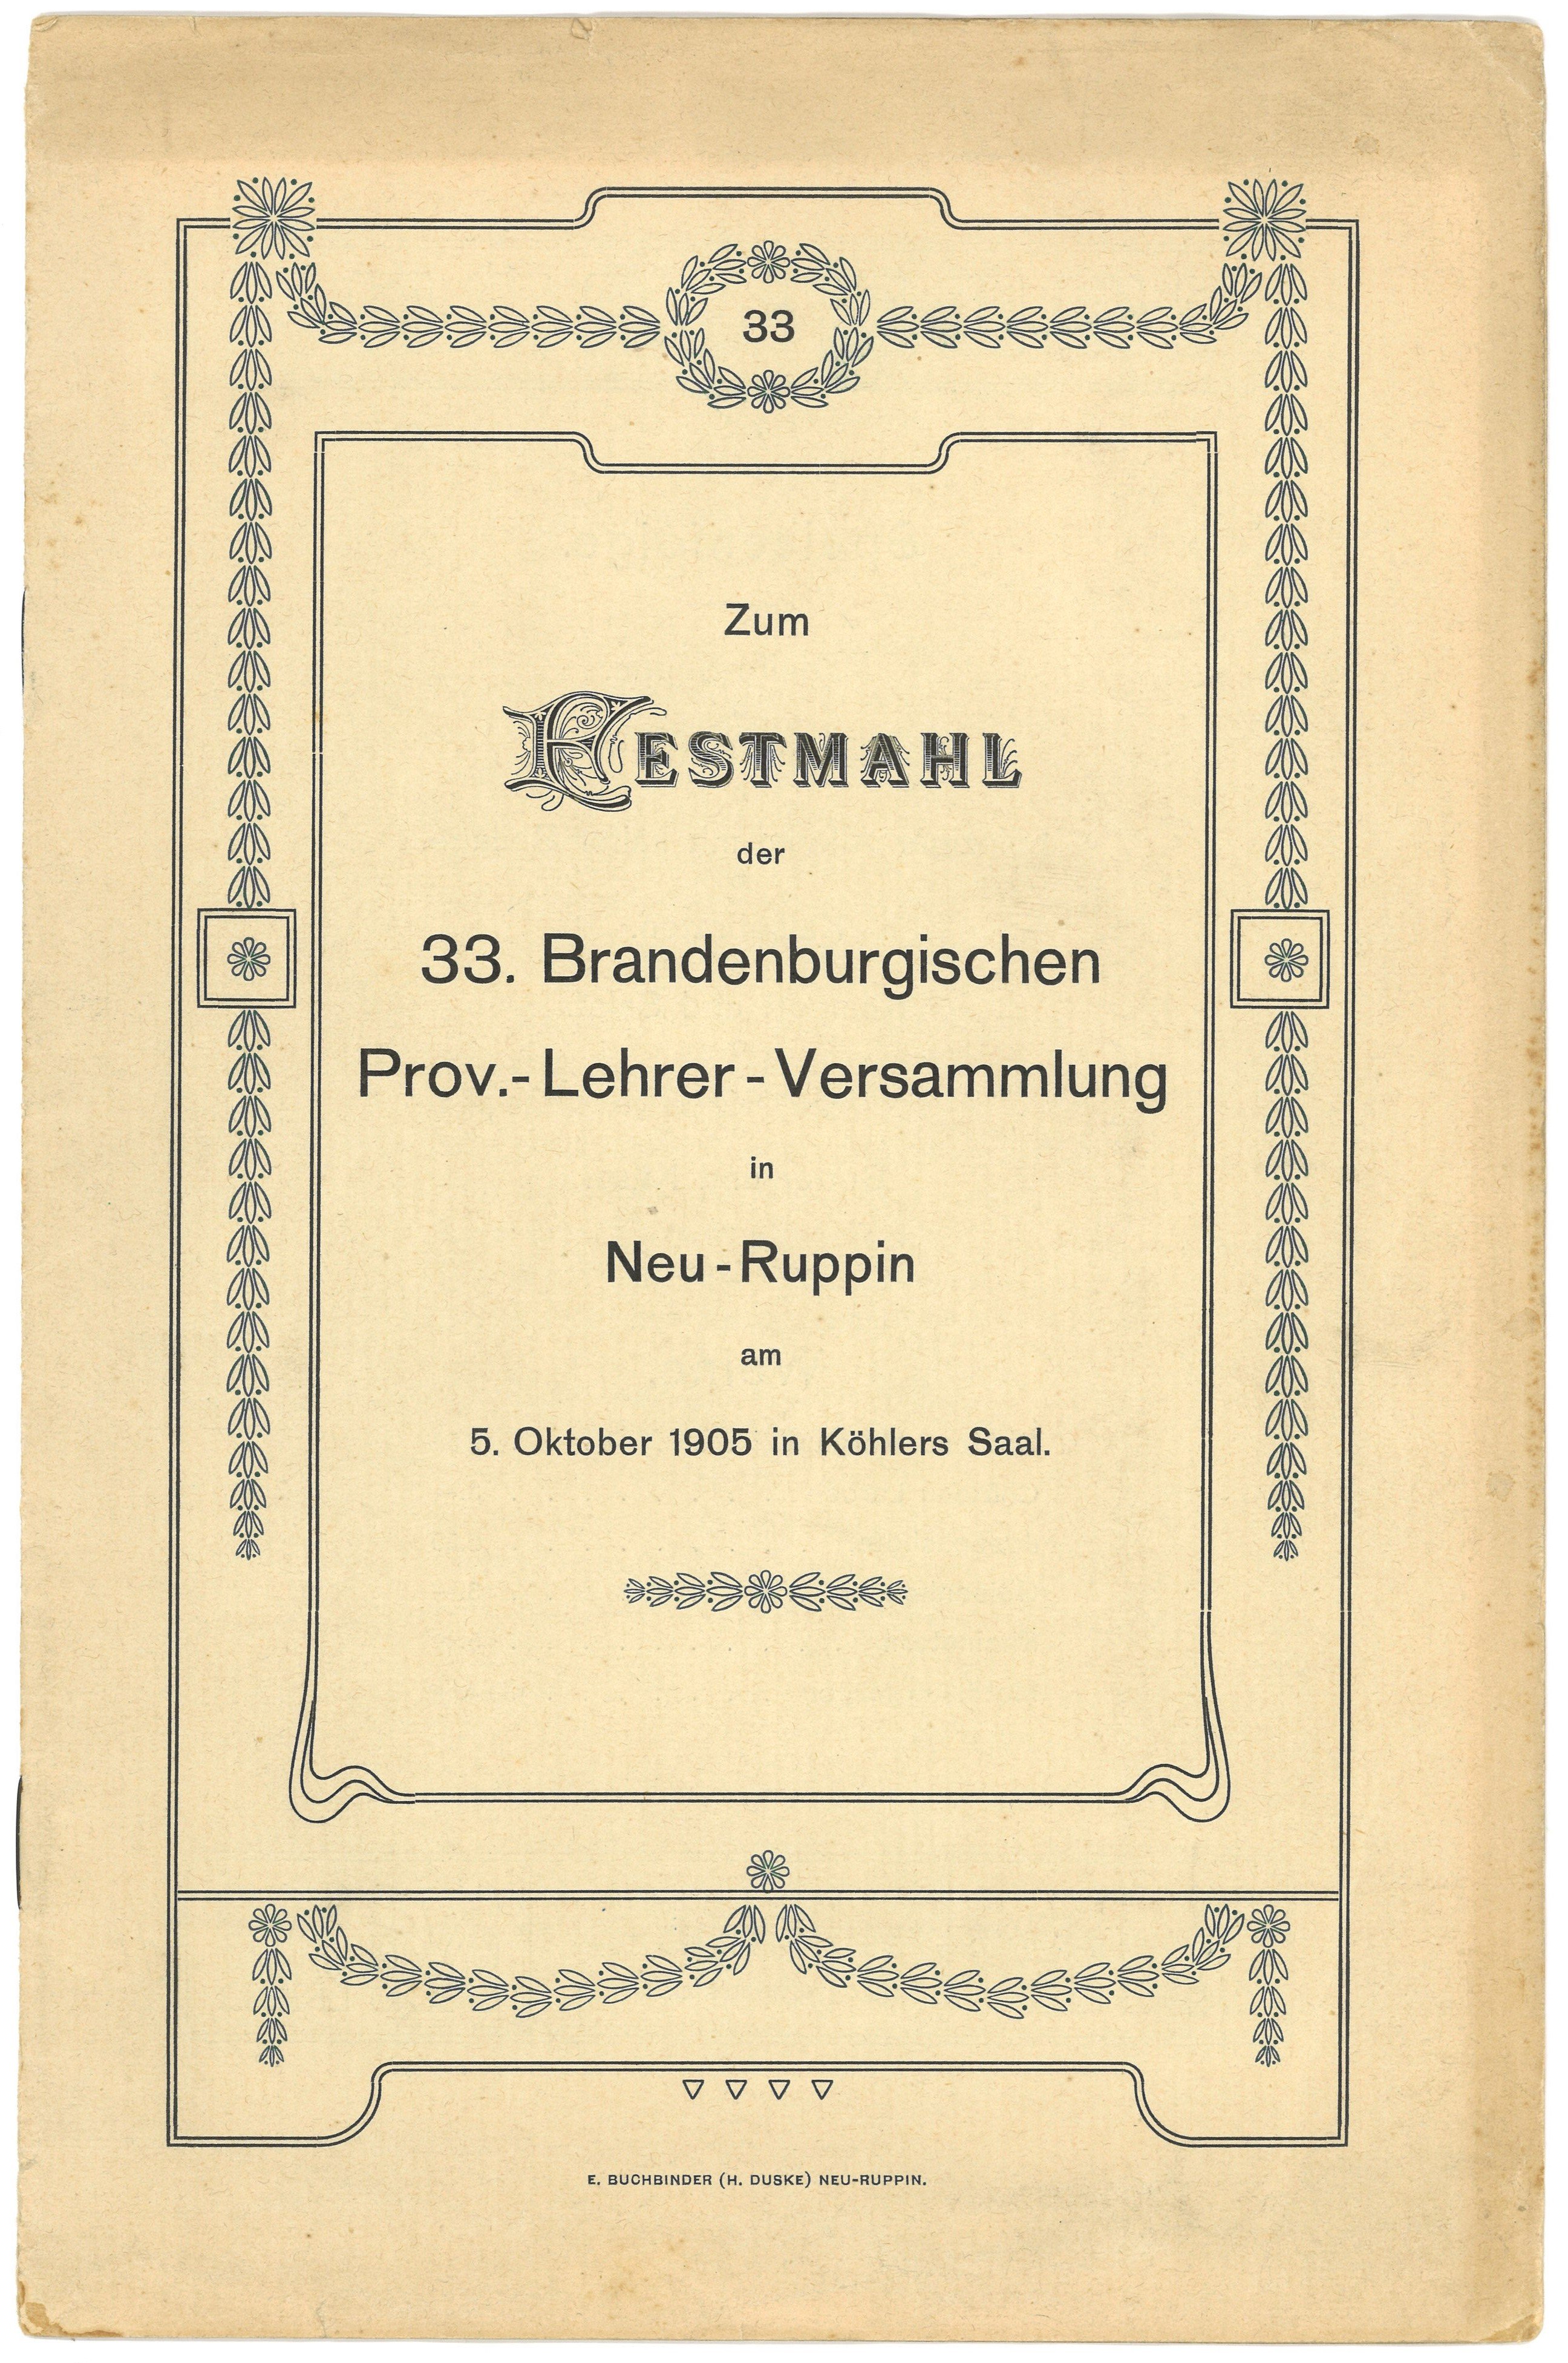 Programm zum Festmahl der 33. Brandenburgischen Provinzial-Lehrer-Versammlung in Neurppin 1905 (Landesgeschichtliche Vereinigung für die Mark Brandenburg e.V., Archiv CC BY)